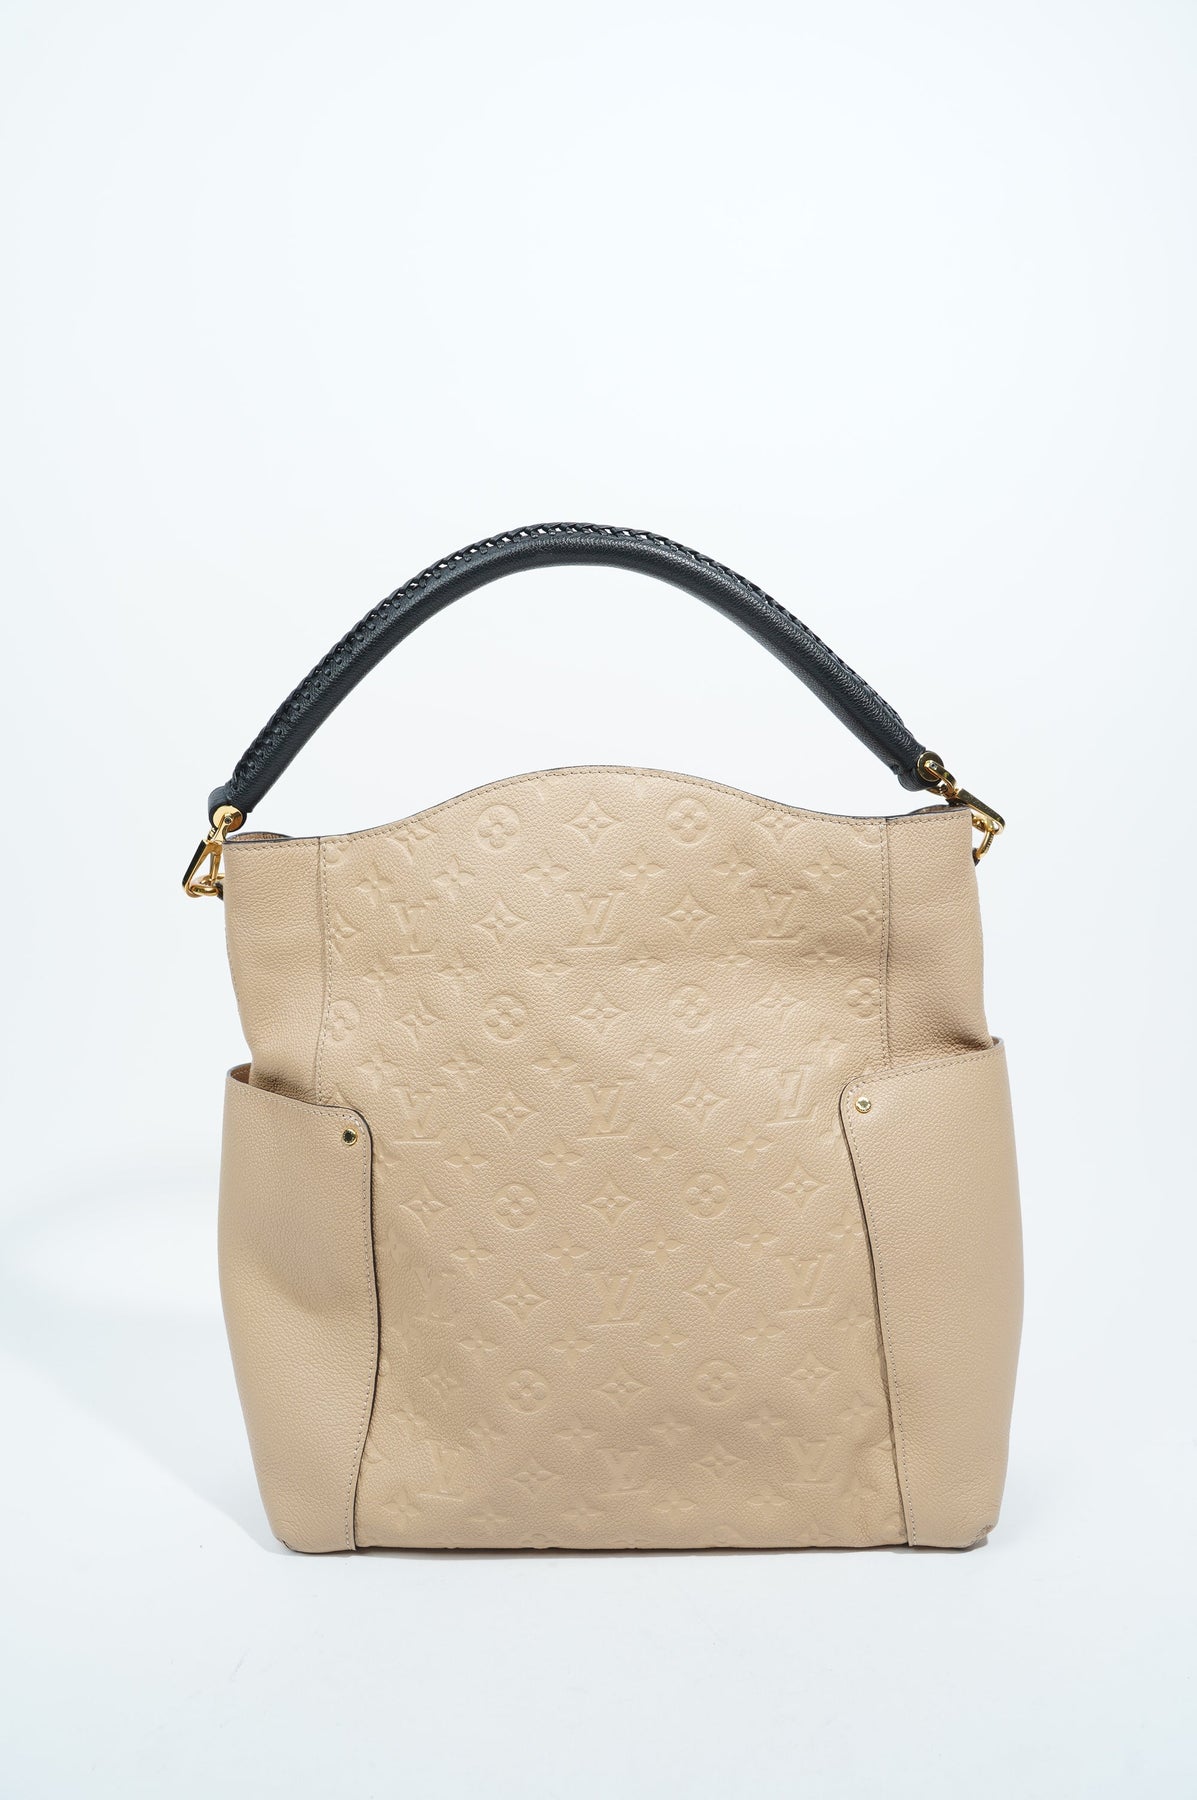 Louis Vuitton Empreinte Leather Hobo Bag